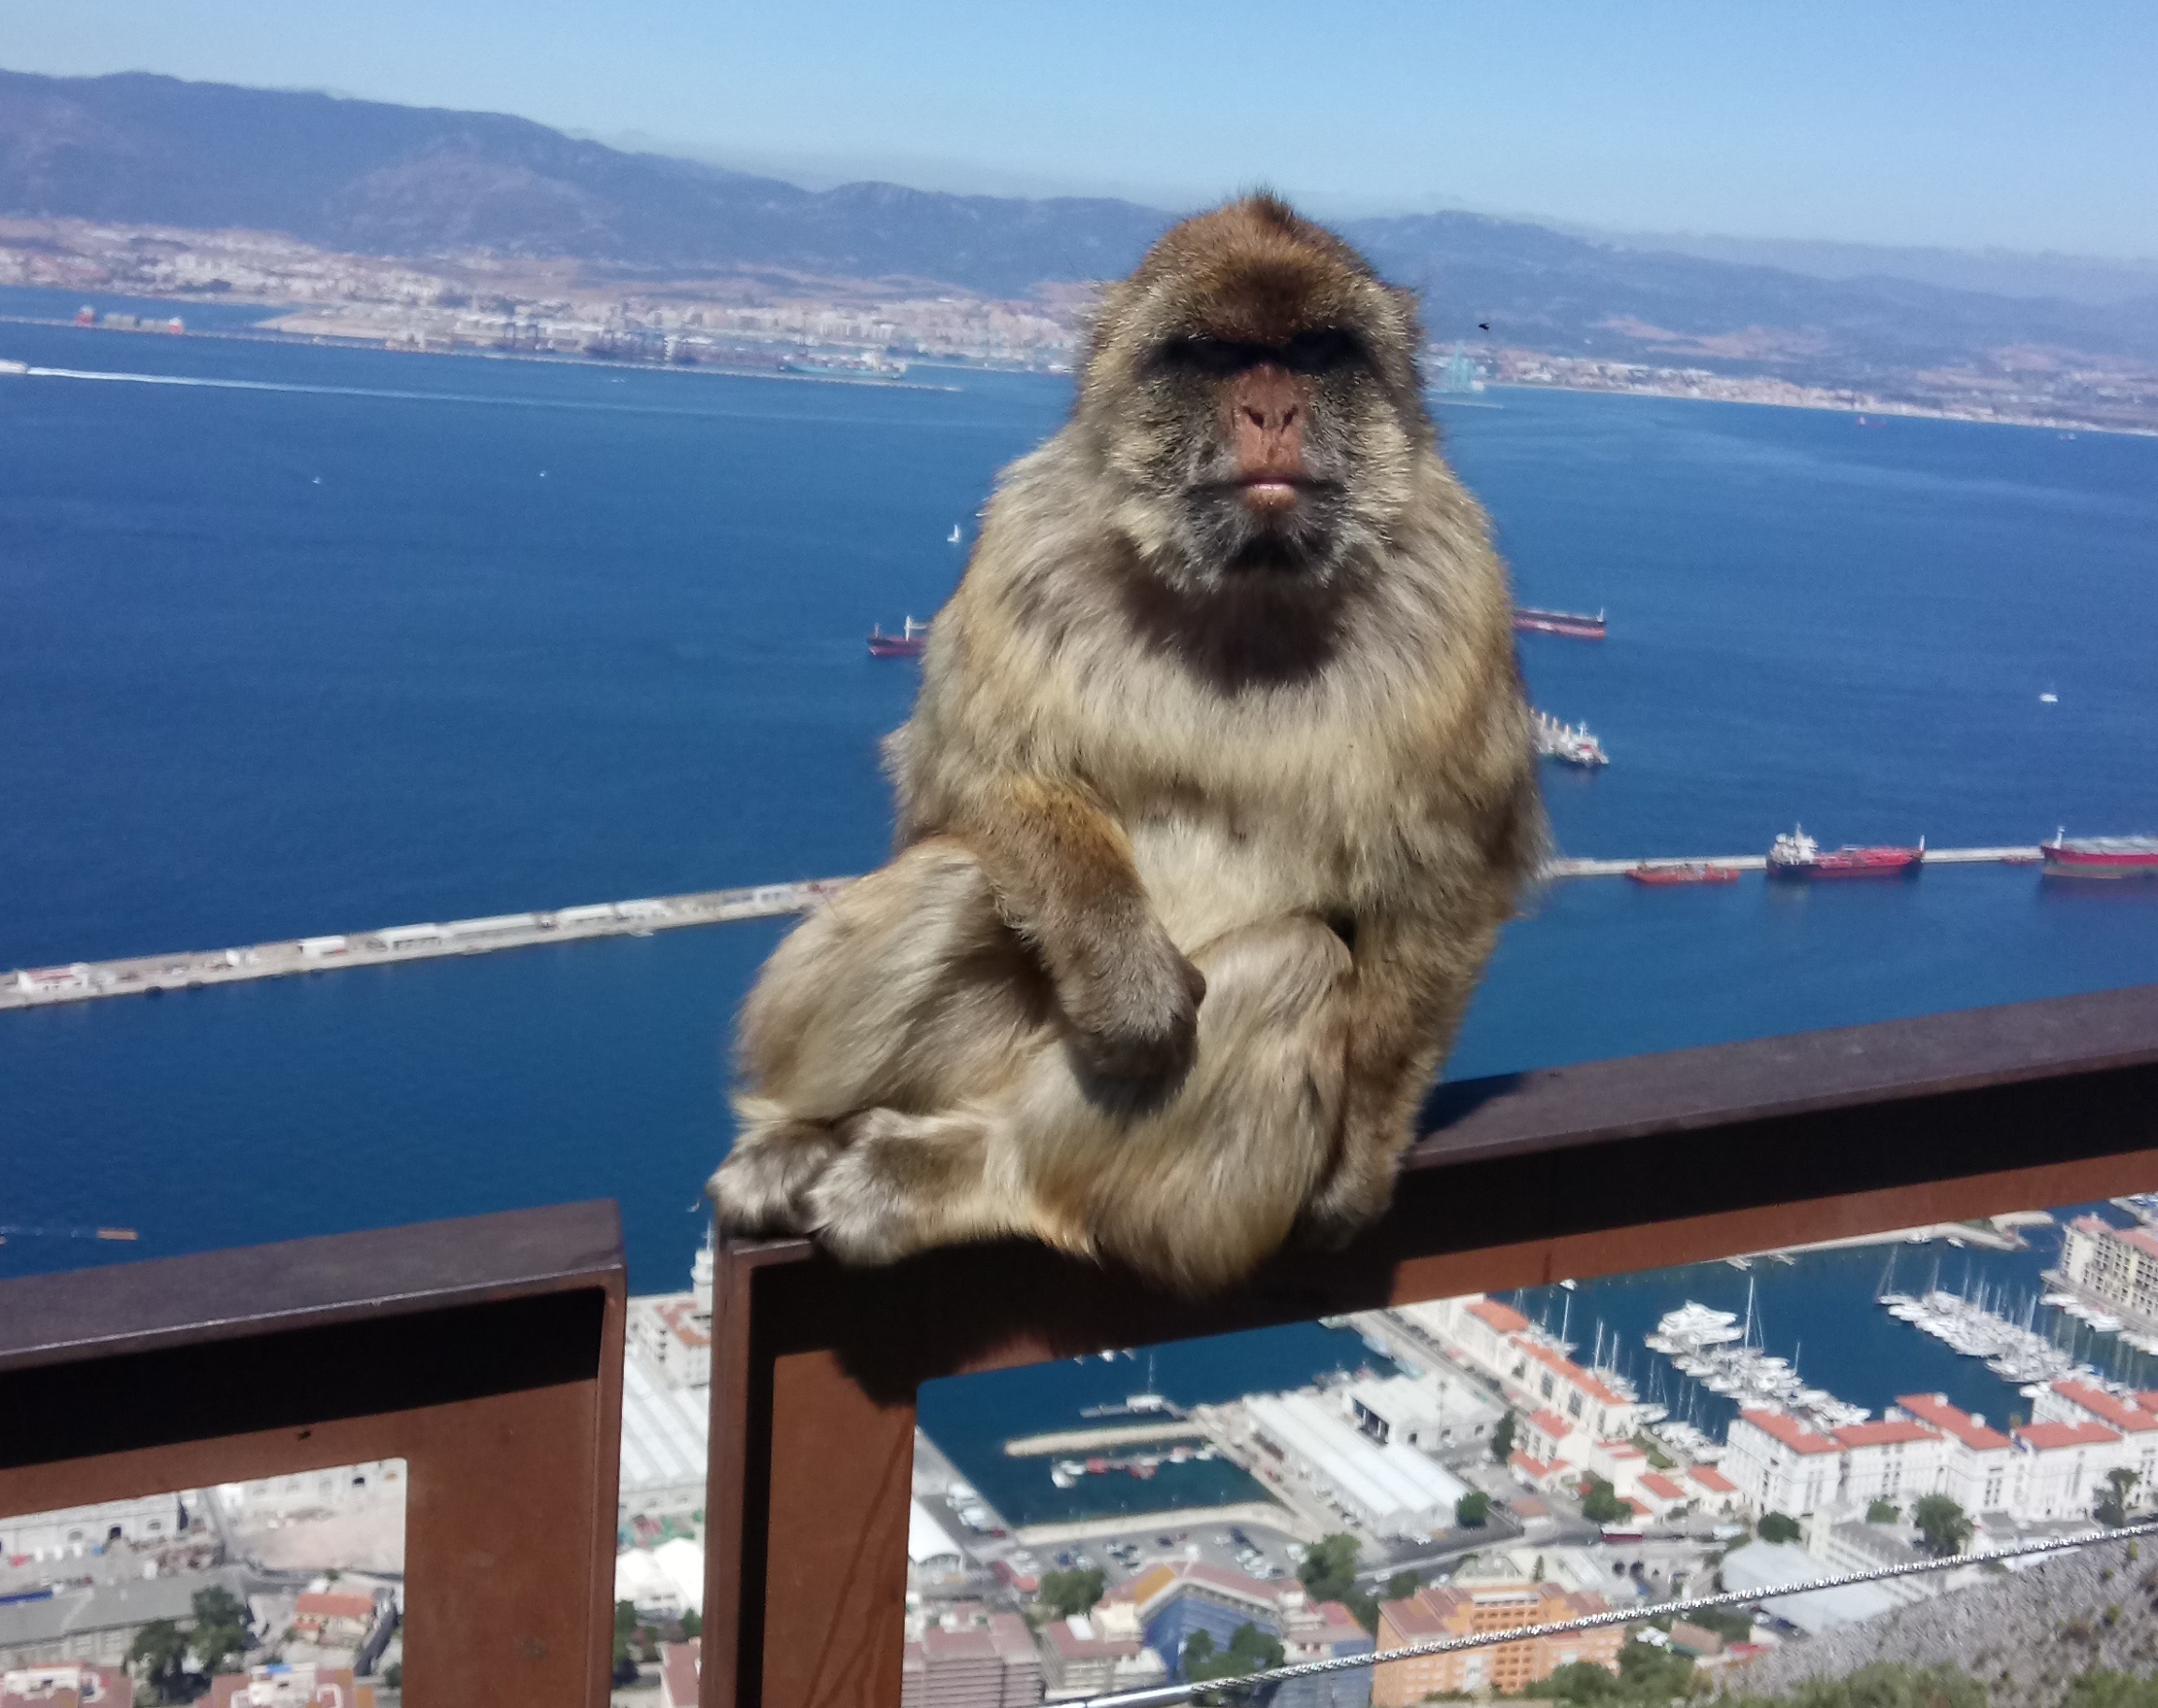 Authentischer Eindruck von Gibraltar an einem Vormittag - und dann schnell weiter!